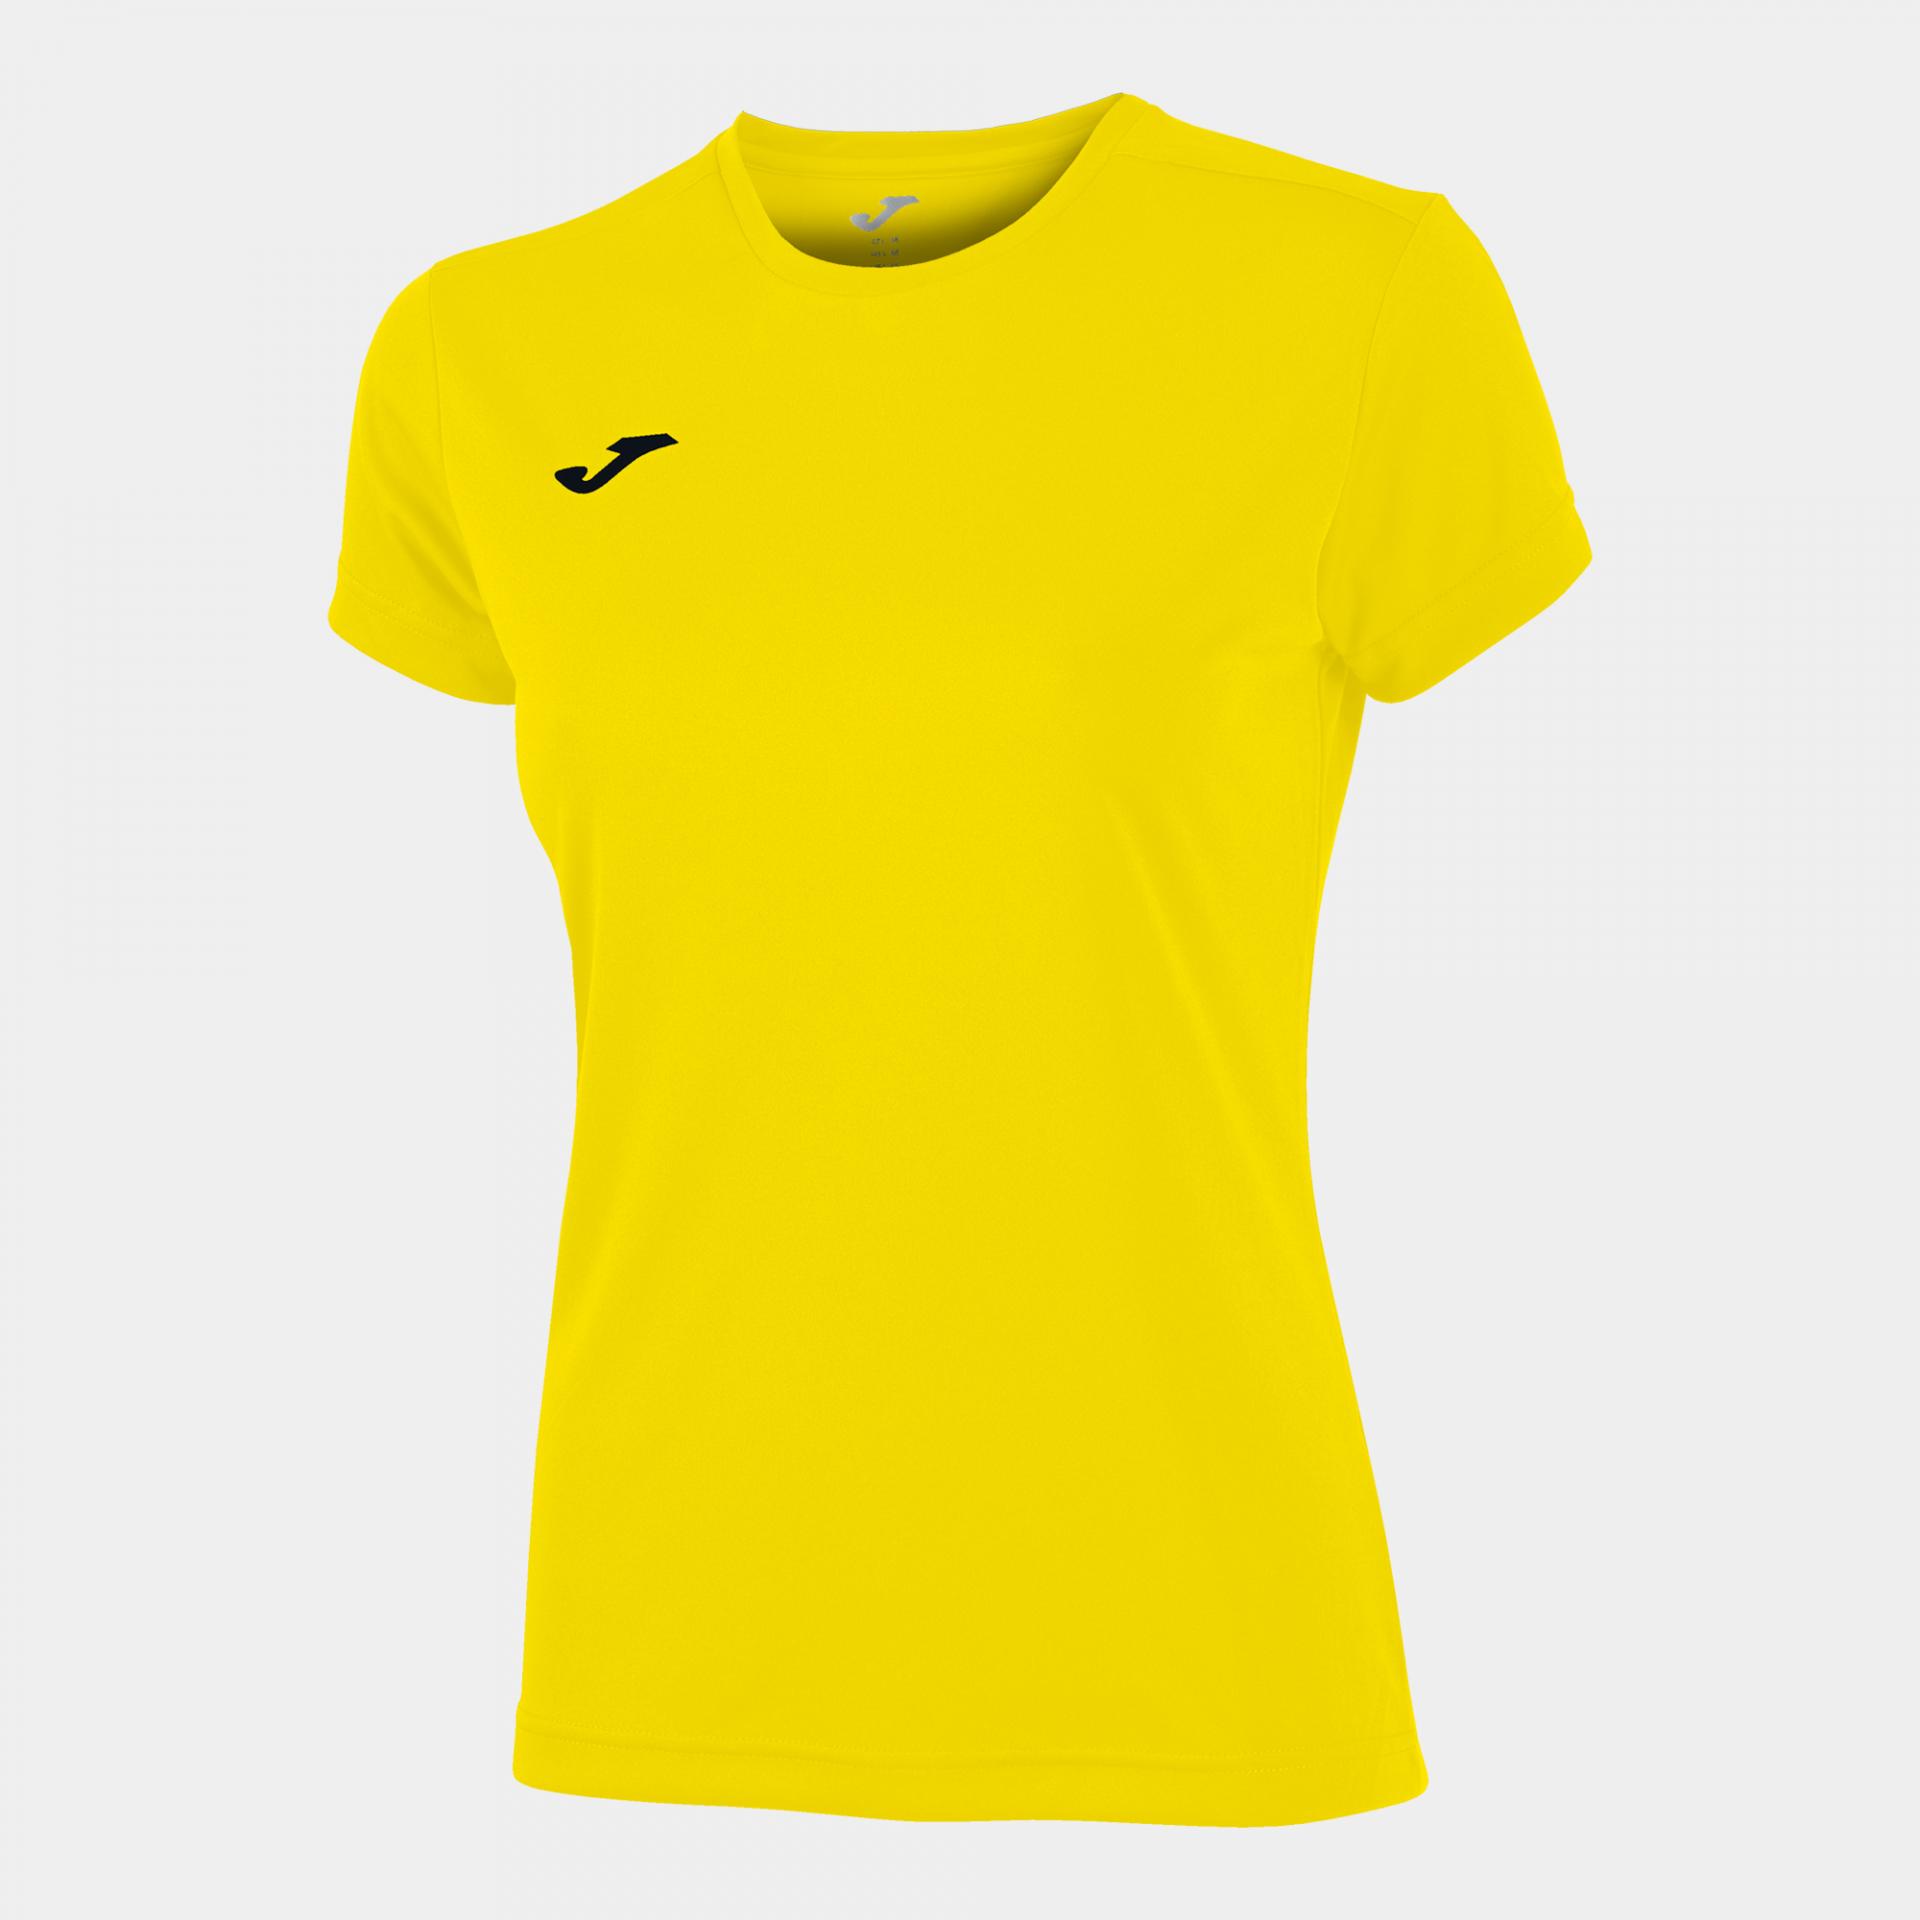 Camiseta combi mujer amarillo 